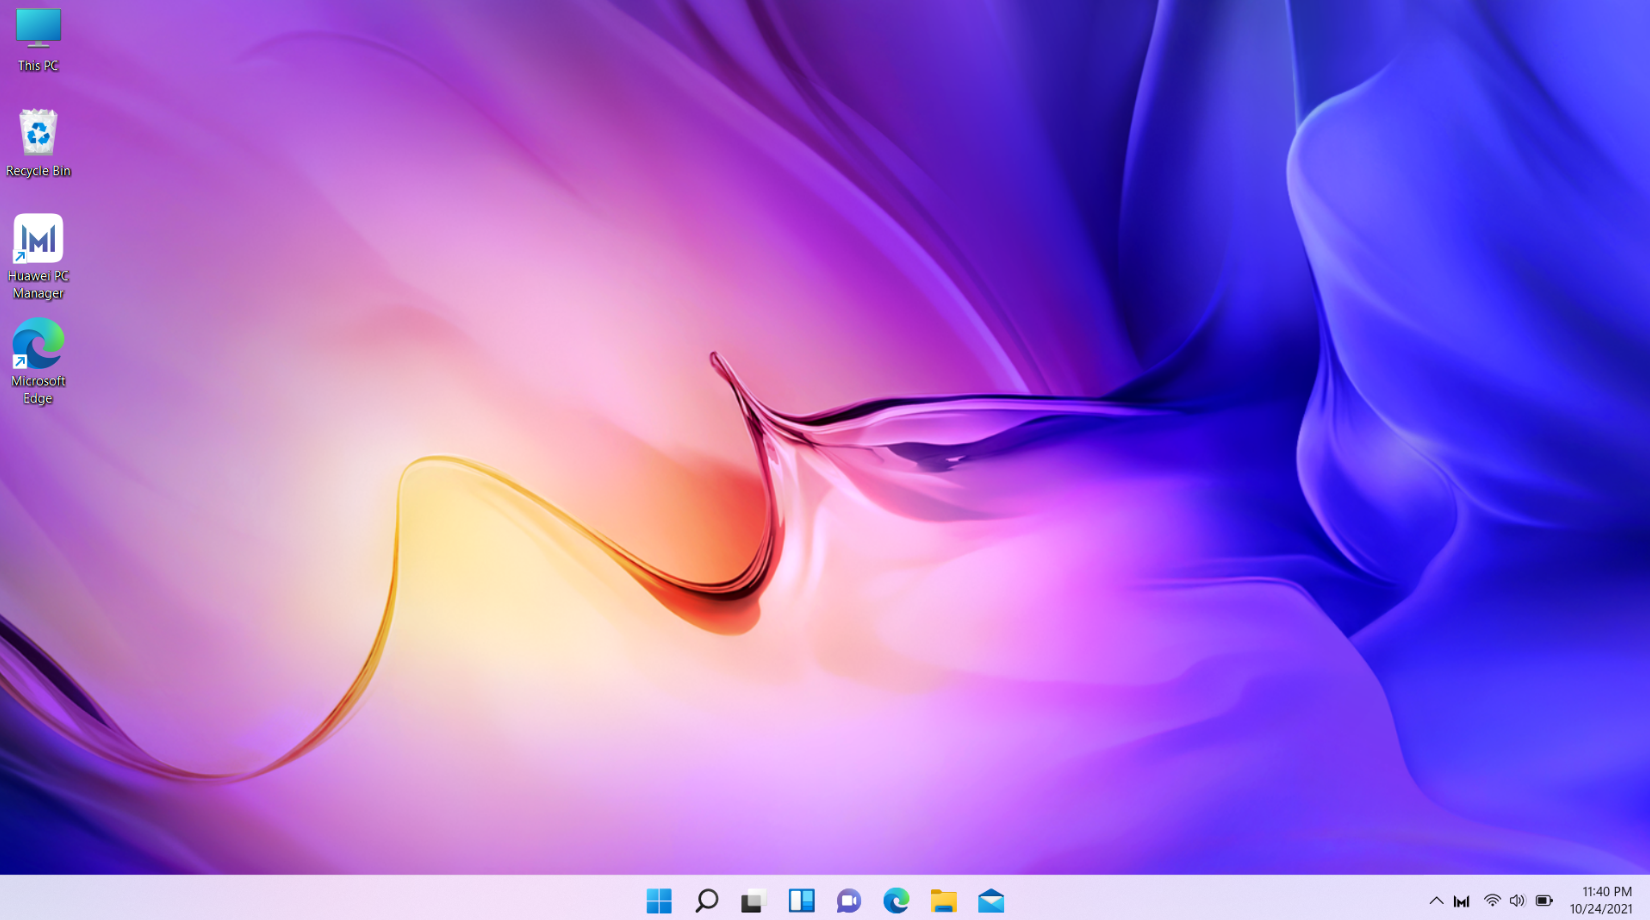 Windows 11 đã có những thay đổi chính đáng để tăng cường trải nghiệm người dùng, ví dụ như hệ thống cài đặt và xuất hiện của thanh Taskbar. Thay đổi chính trong Windows 11 mang đến những tính năng động lực và thú vị cho người dùng. Hãy khám phá những tính năng mới của Windows 11 bằng cách nhấn vào hình ảnh.